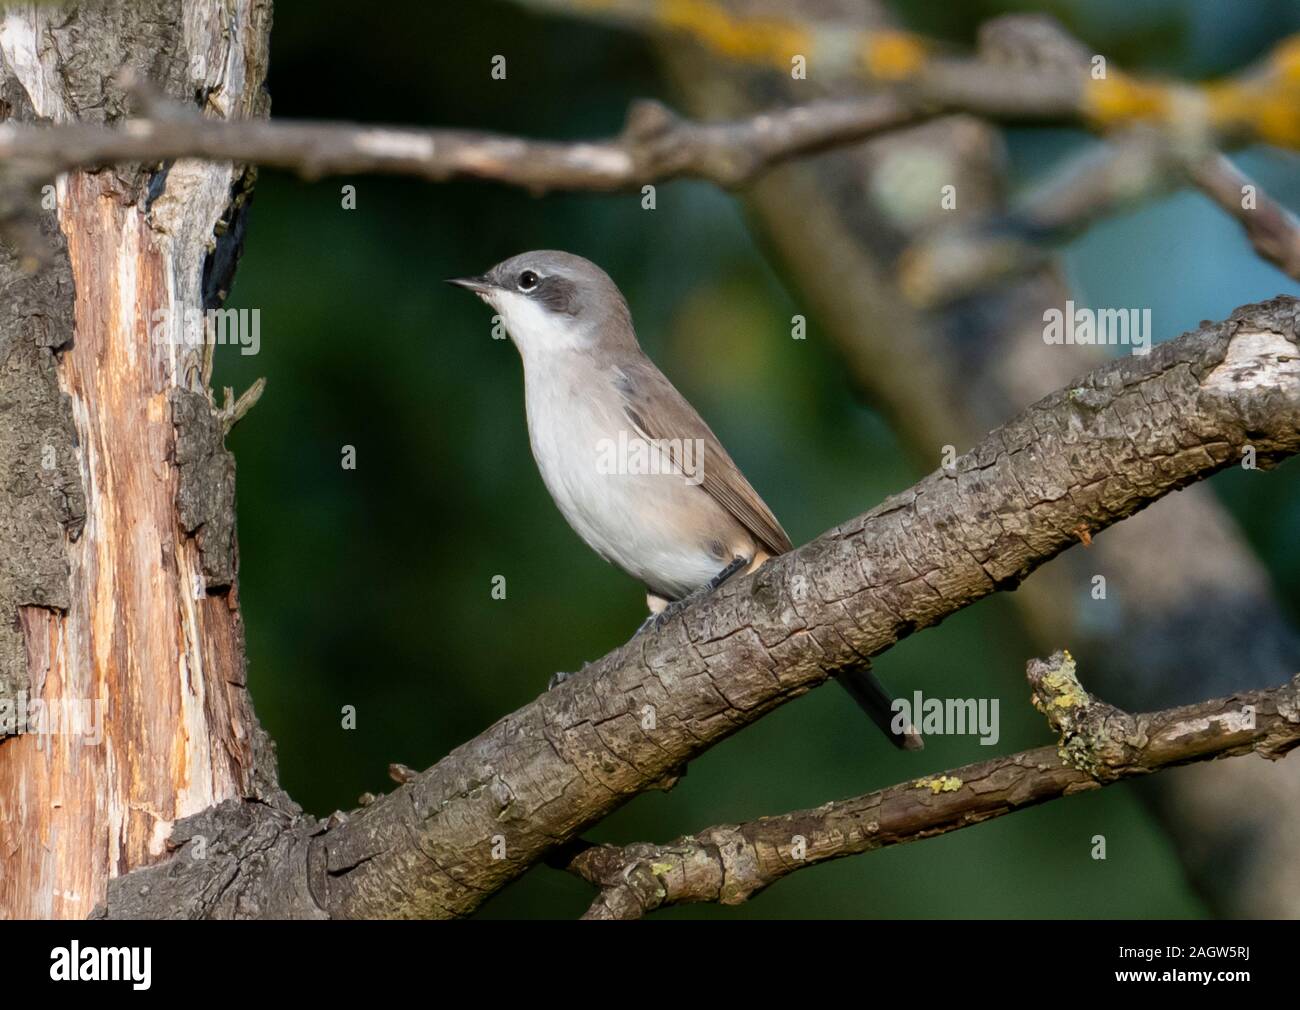 Bird on the tree Stock Photo